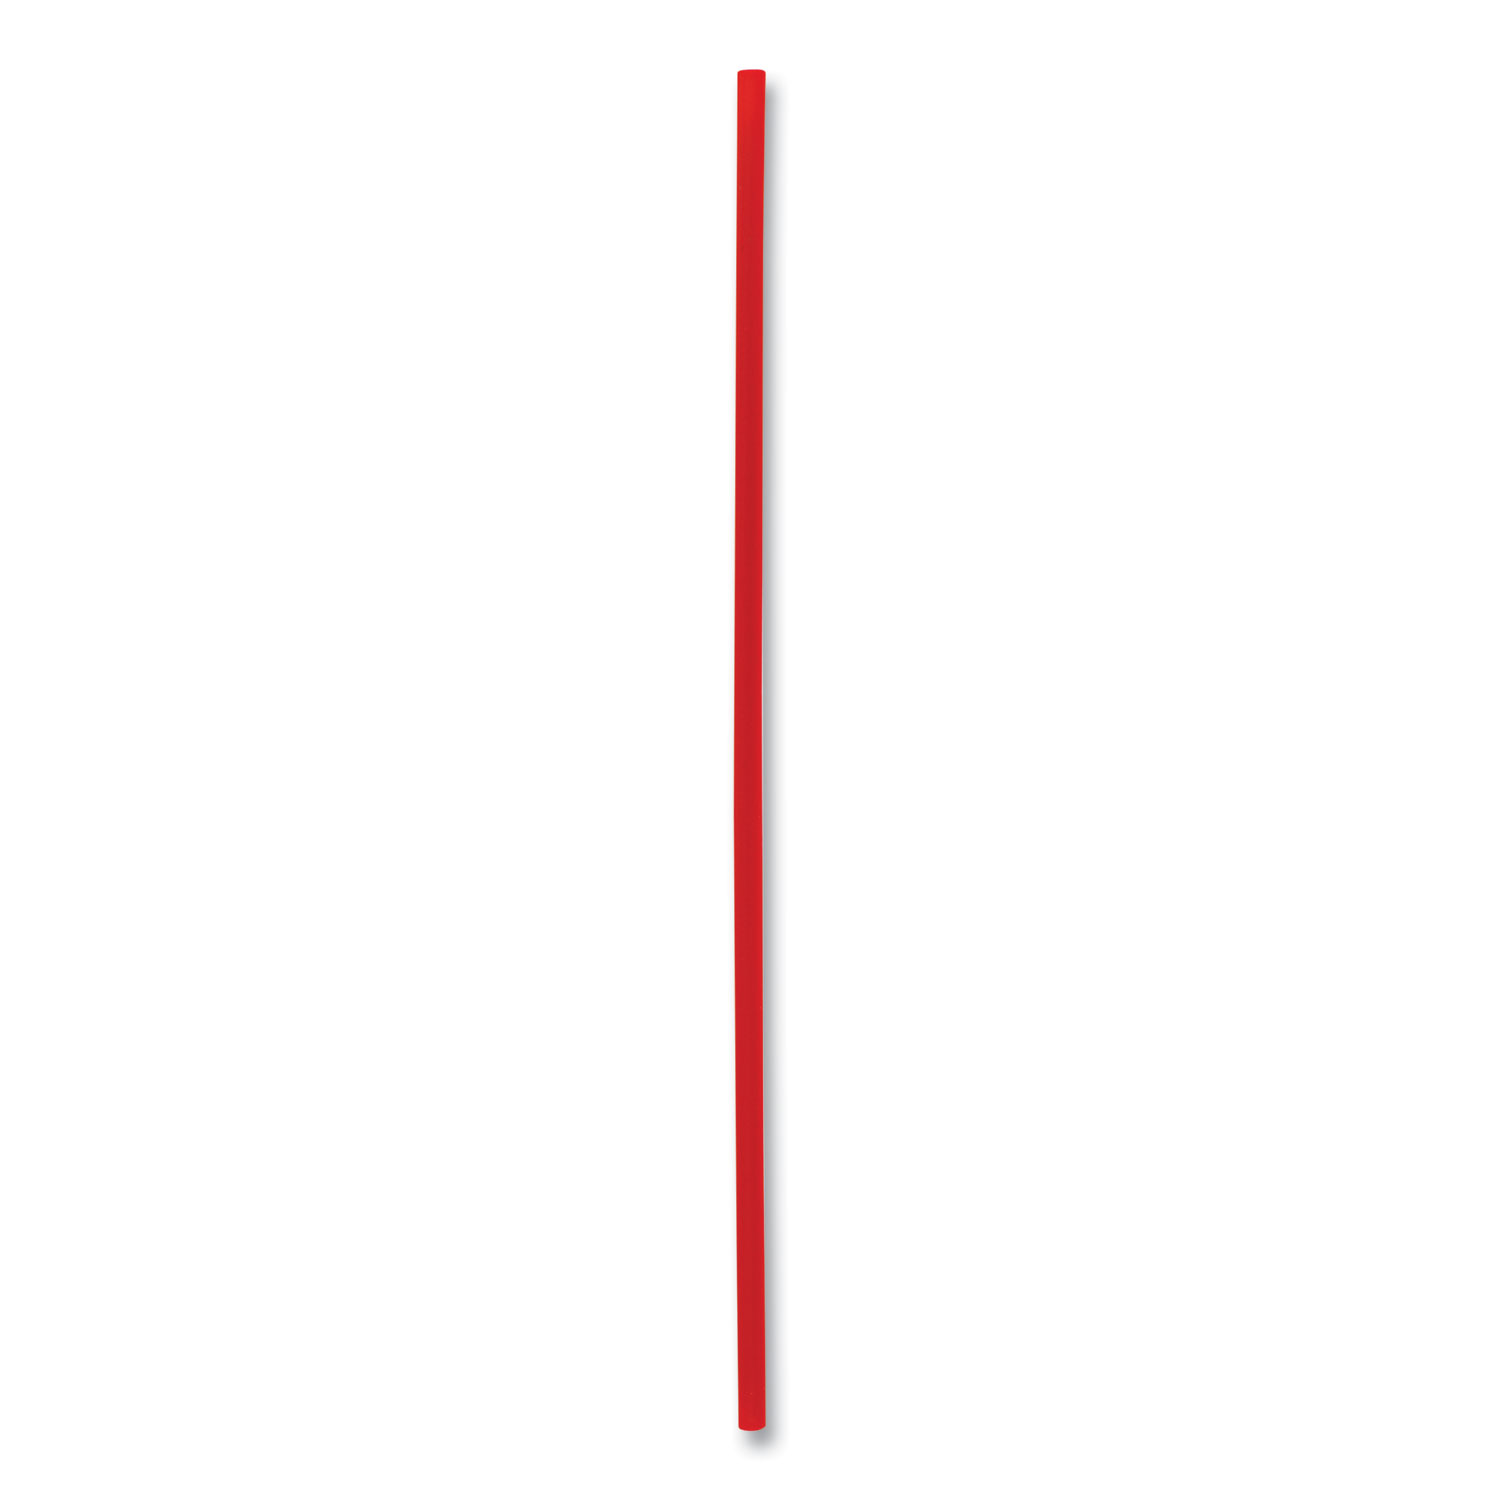 Single-Tube Stir-Straws,5.25", Polypropylene, Red, 1,000/Pack, 10 Packs/Carton